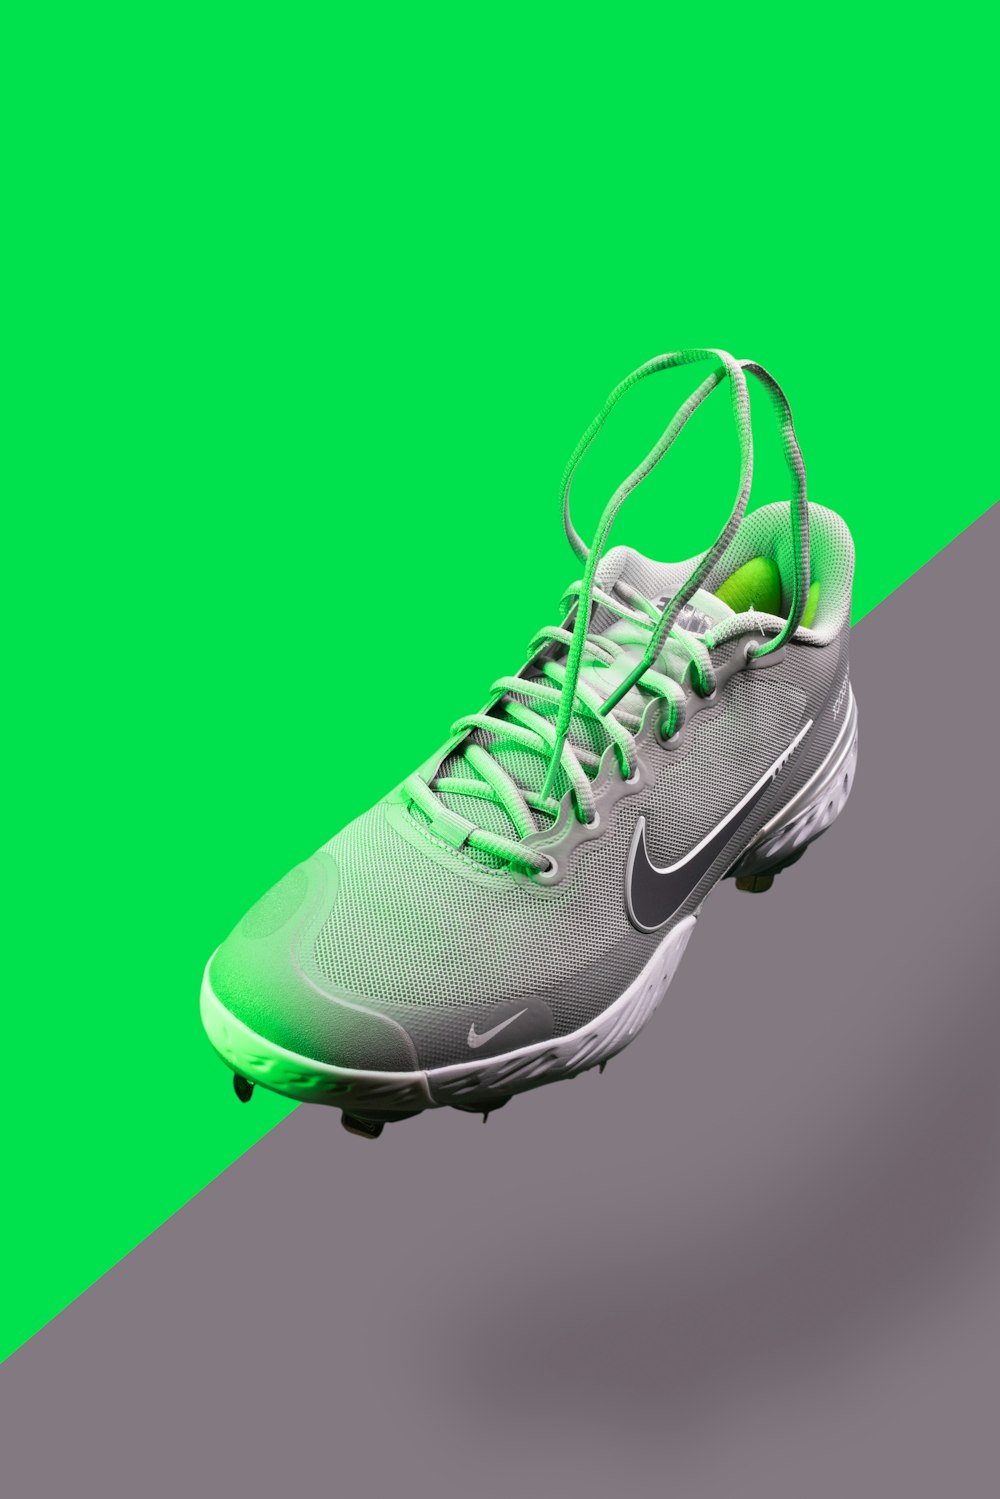 Zapatillas deportivas Nike verdes y blancas